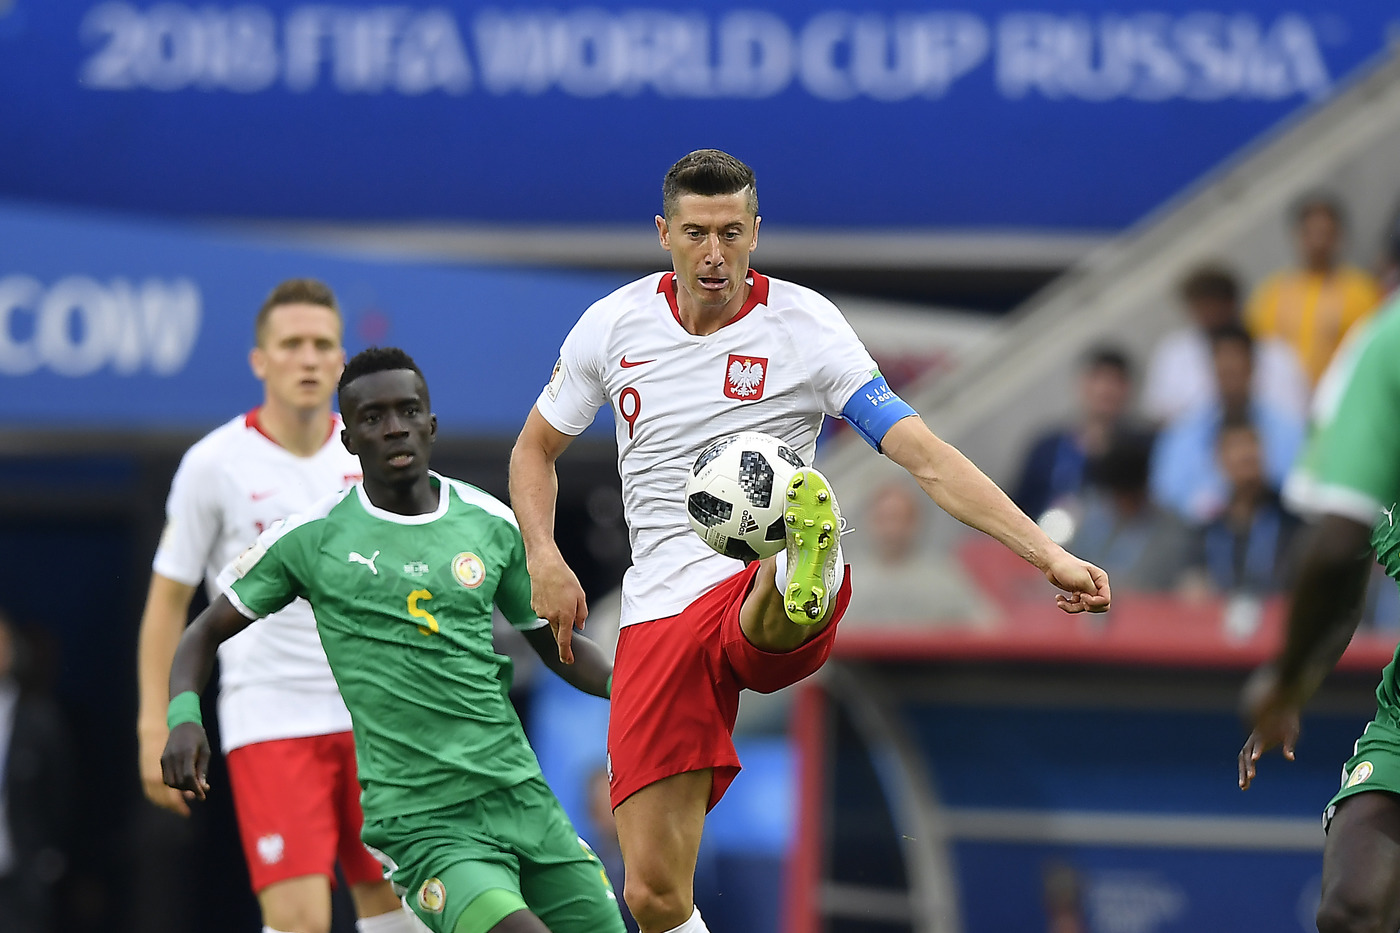 Polonia-Colombia domenica 24 giugno, analisi e pronostico Mondiali Russia 2018 girone H